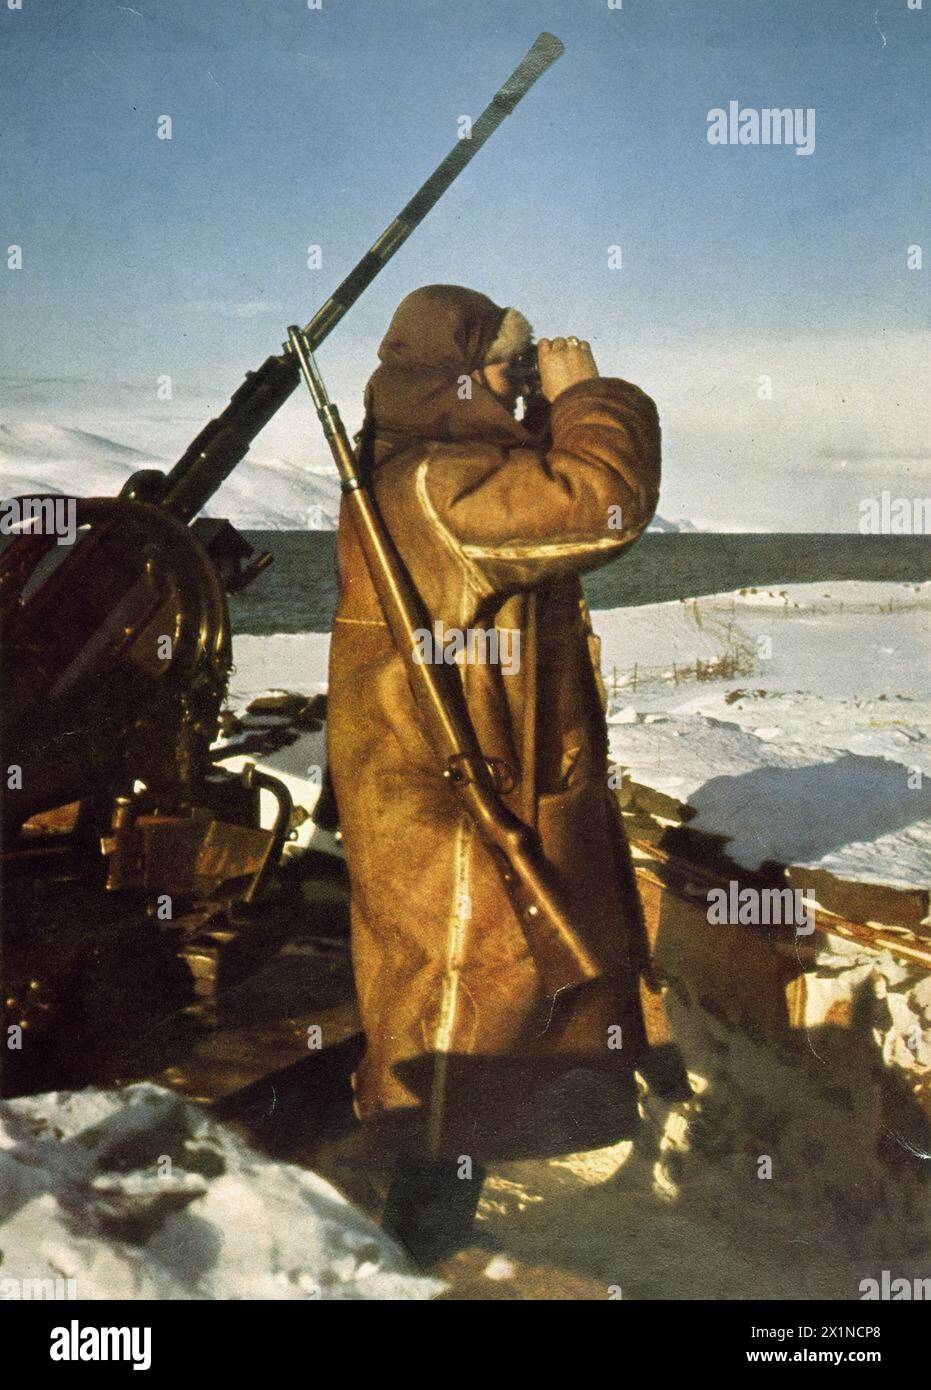 FOTOGRAFIE UFFICIALI A COLORI TEDESCHE DELLA SERIE 'DAS HEER IM GROSSDEUTSCHEN FREIHEITSKAMPF' [L'ESERCITO NELLA GRANDE LOTTA DELLA GERMANIA PER LA LIBERAZIONE], C. 1941 - 1942 - la sentinella di un'unità costiera Flak tiene d'occhio vicino a una posizione di cannone antiaereo Flak 38 da 2 cm in Norvegia, Foto Stock